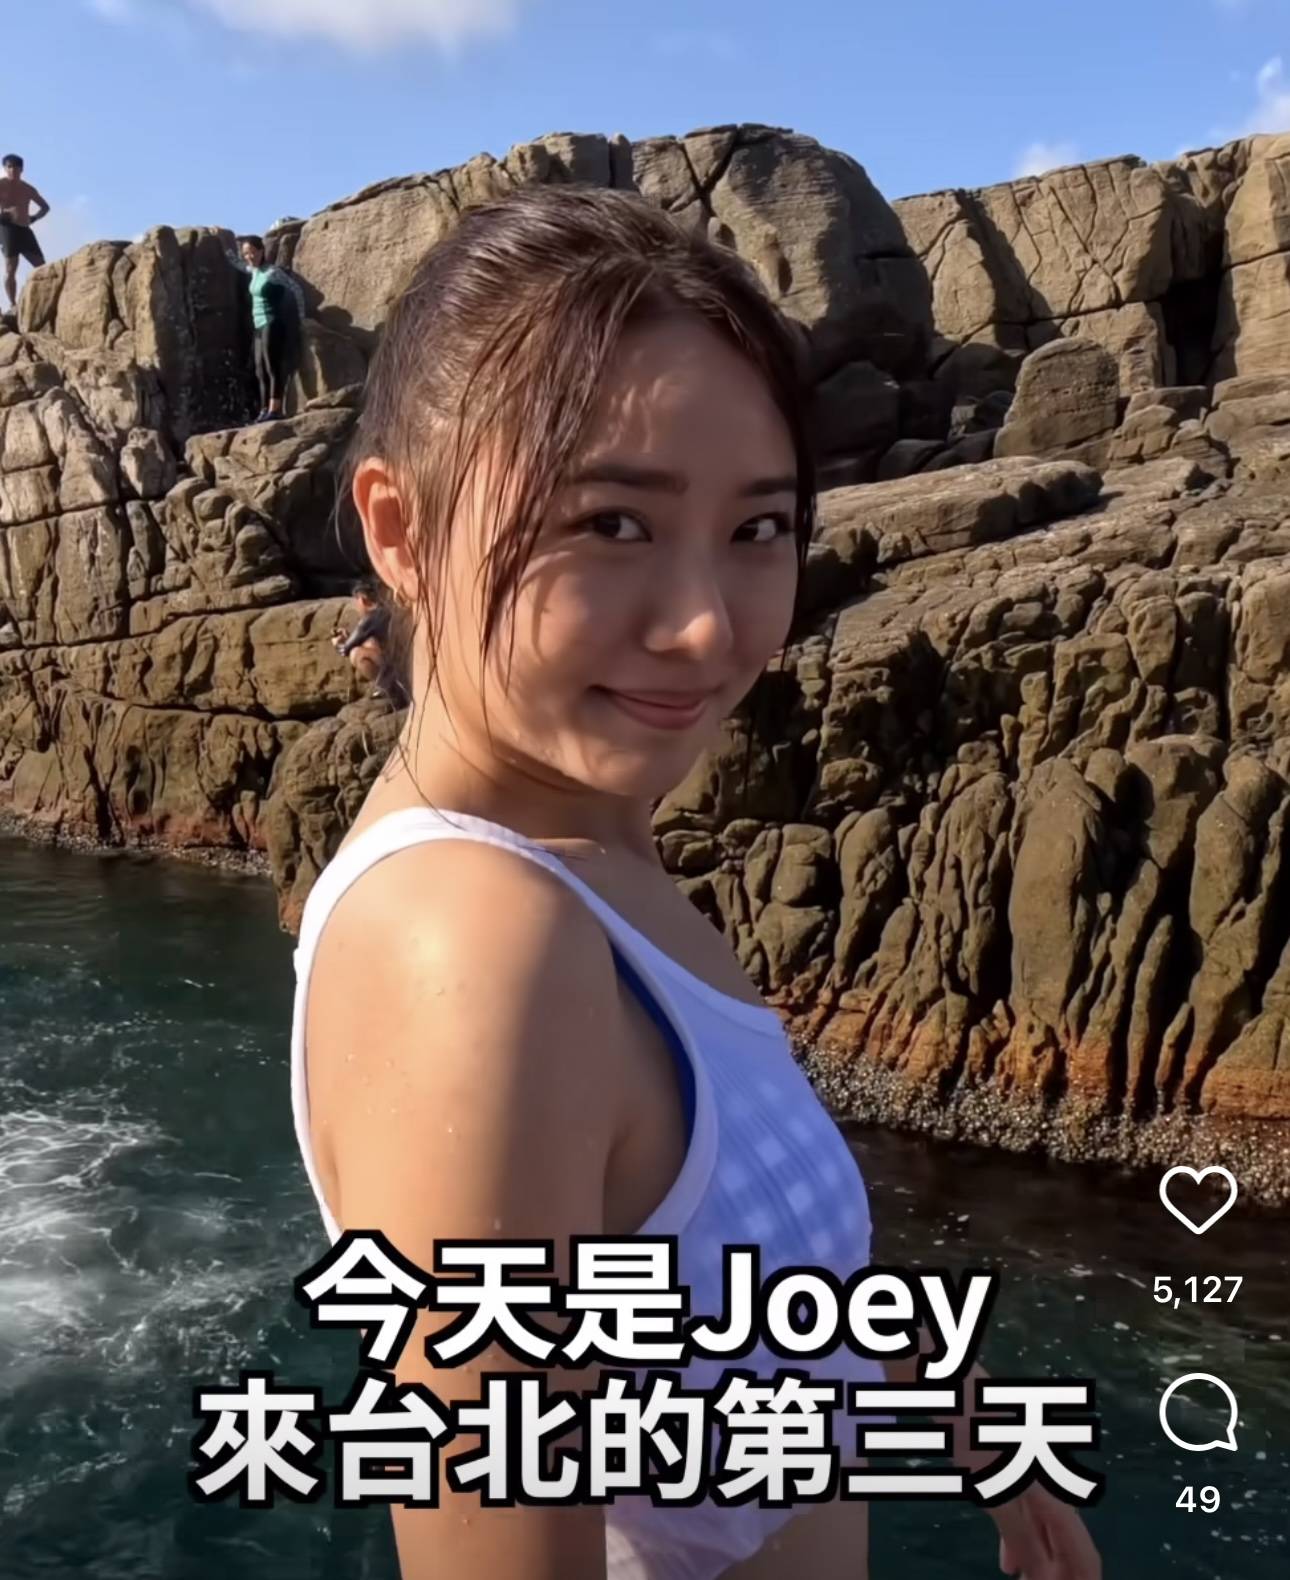 戴祖仪 泳装 戴祖仪 台湾 Joey亦有把握时间在台湾游玩。